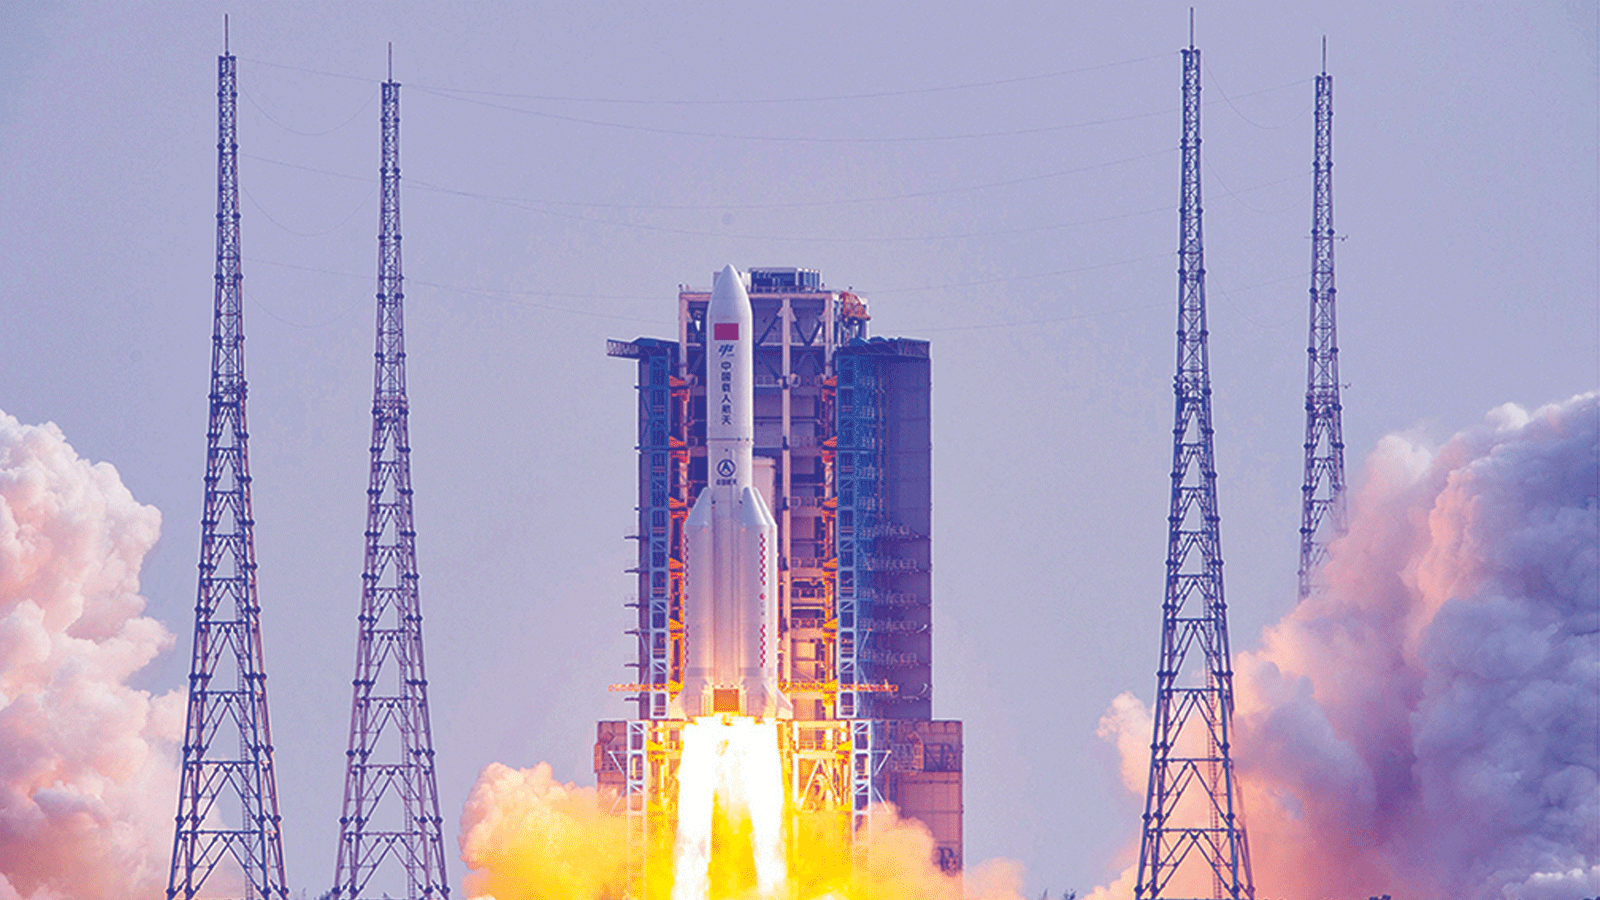 صاروخ لونج مارش 5 بي، يحمل الوحدة العلمية الصينية منغتيان، الوحدة النهائية لمحطة تيانغونغ الفضائية، ينطلق من مركز وينتشانغ لإطلاق الفضاء في مقاطعة هاينان جنوب الصين.31 تشرين الأول\أكتوبر 2022.